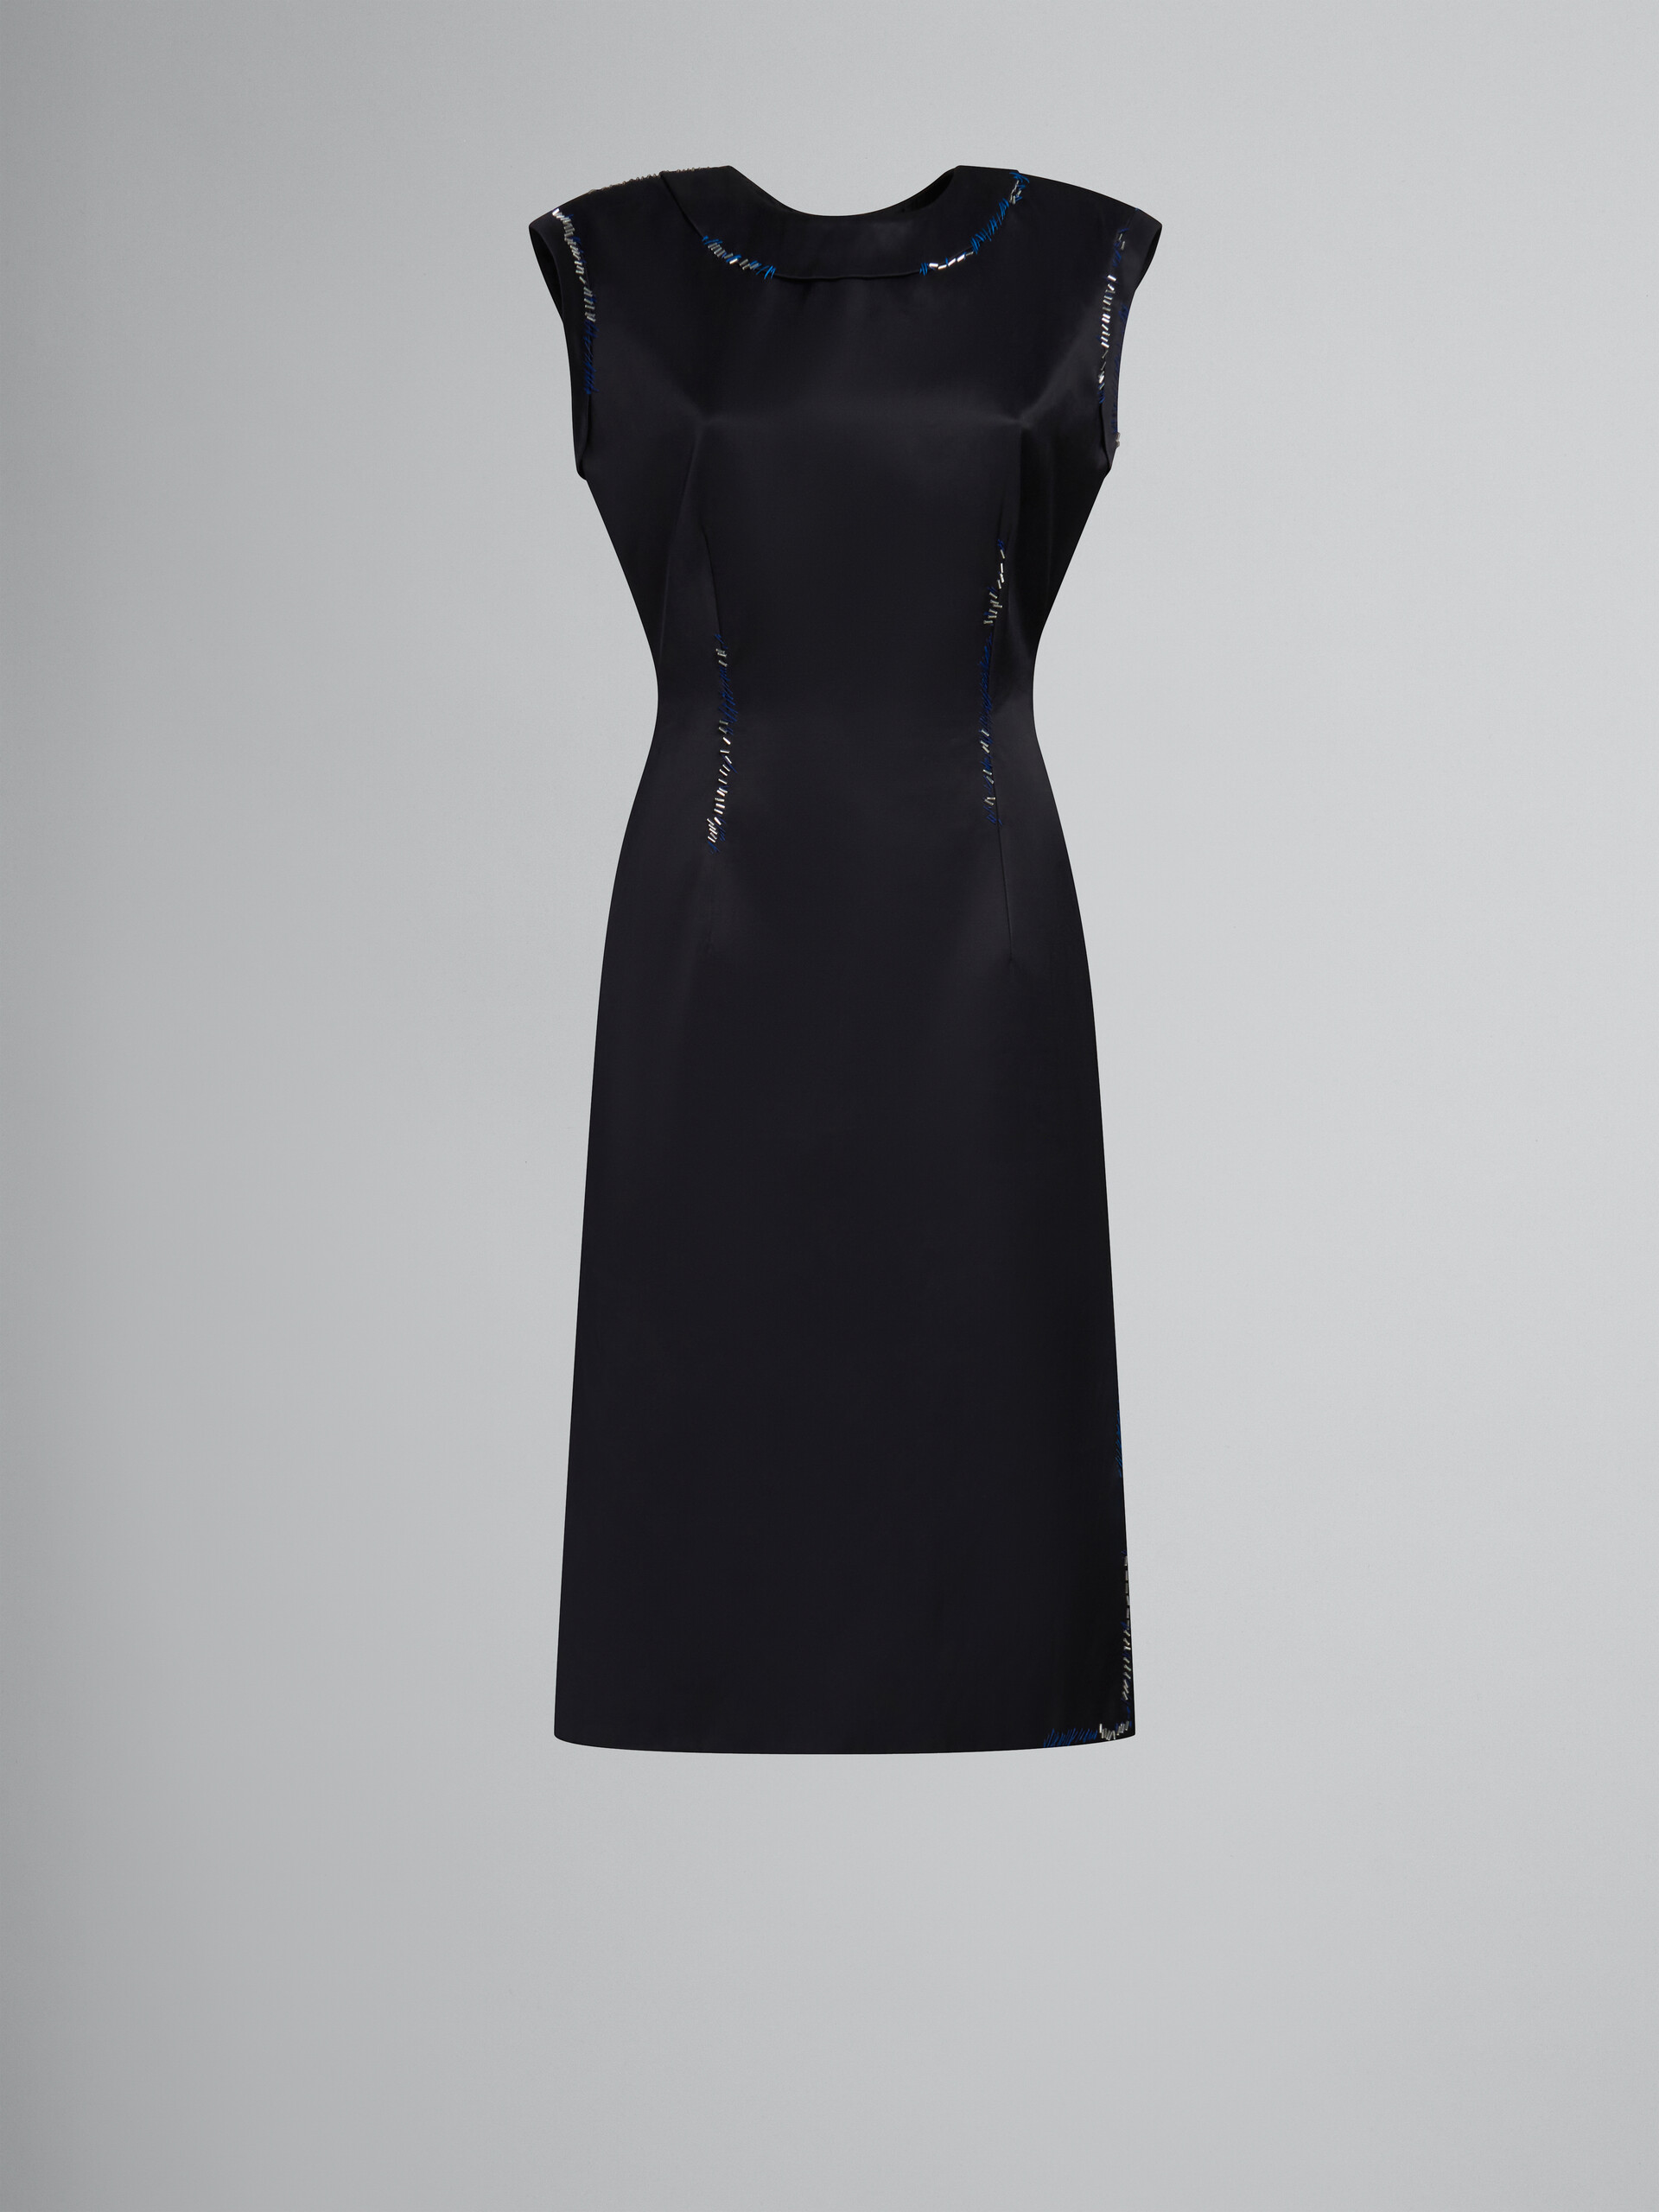 ブラック ダッチェス サテン製 シースドレス、ビーズメンディング装飾 - ドレス - Image 1